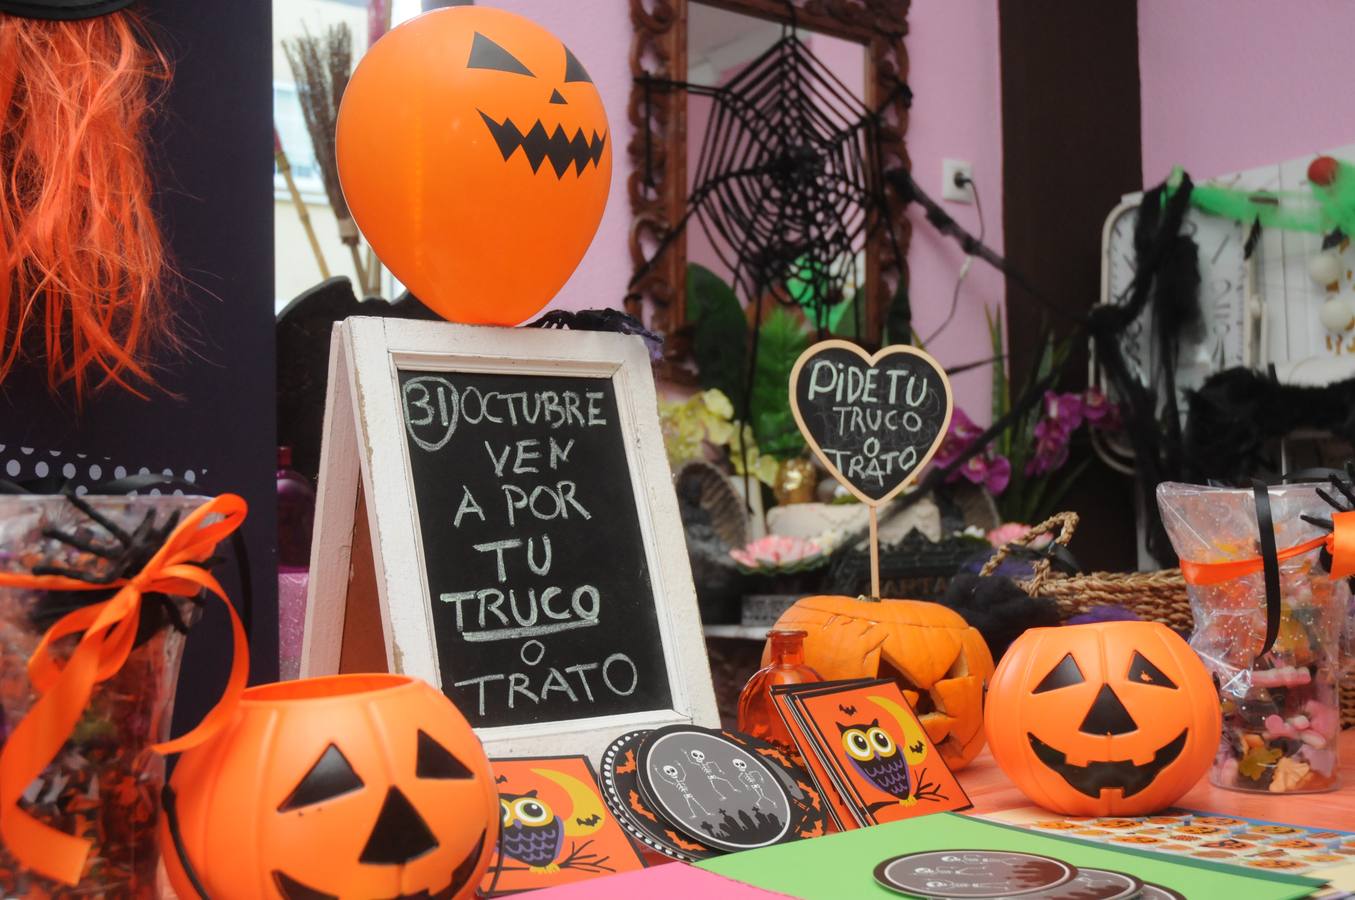 La pastelería Glassé de Mérida ha creado una línea de dulces para Halloween. Una tradicion de influencia norteamericana que se afianza con los años en nuestra tierra.